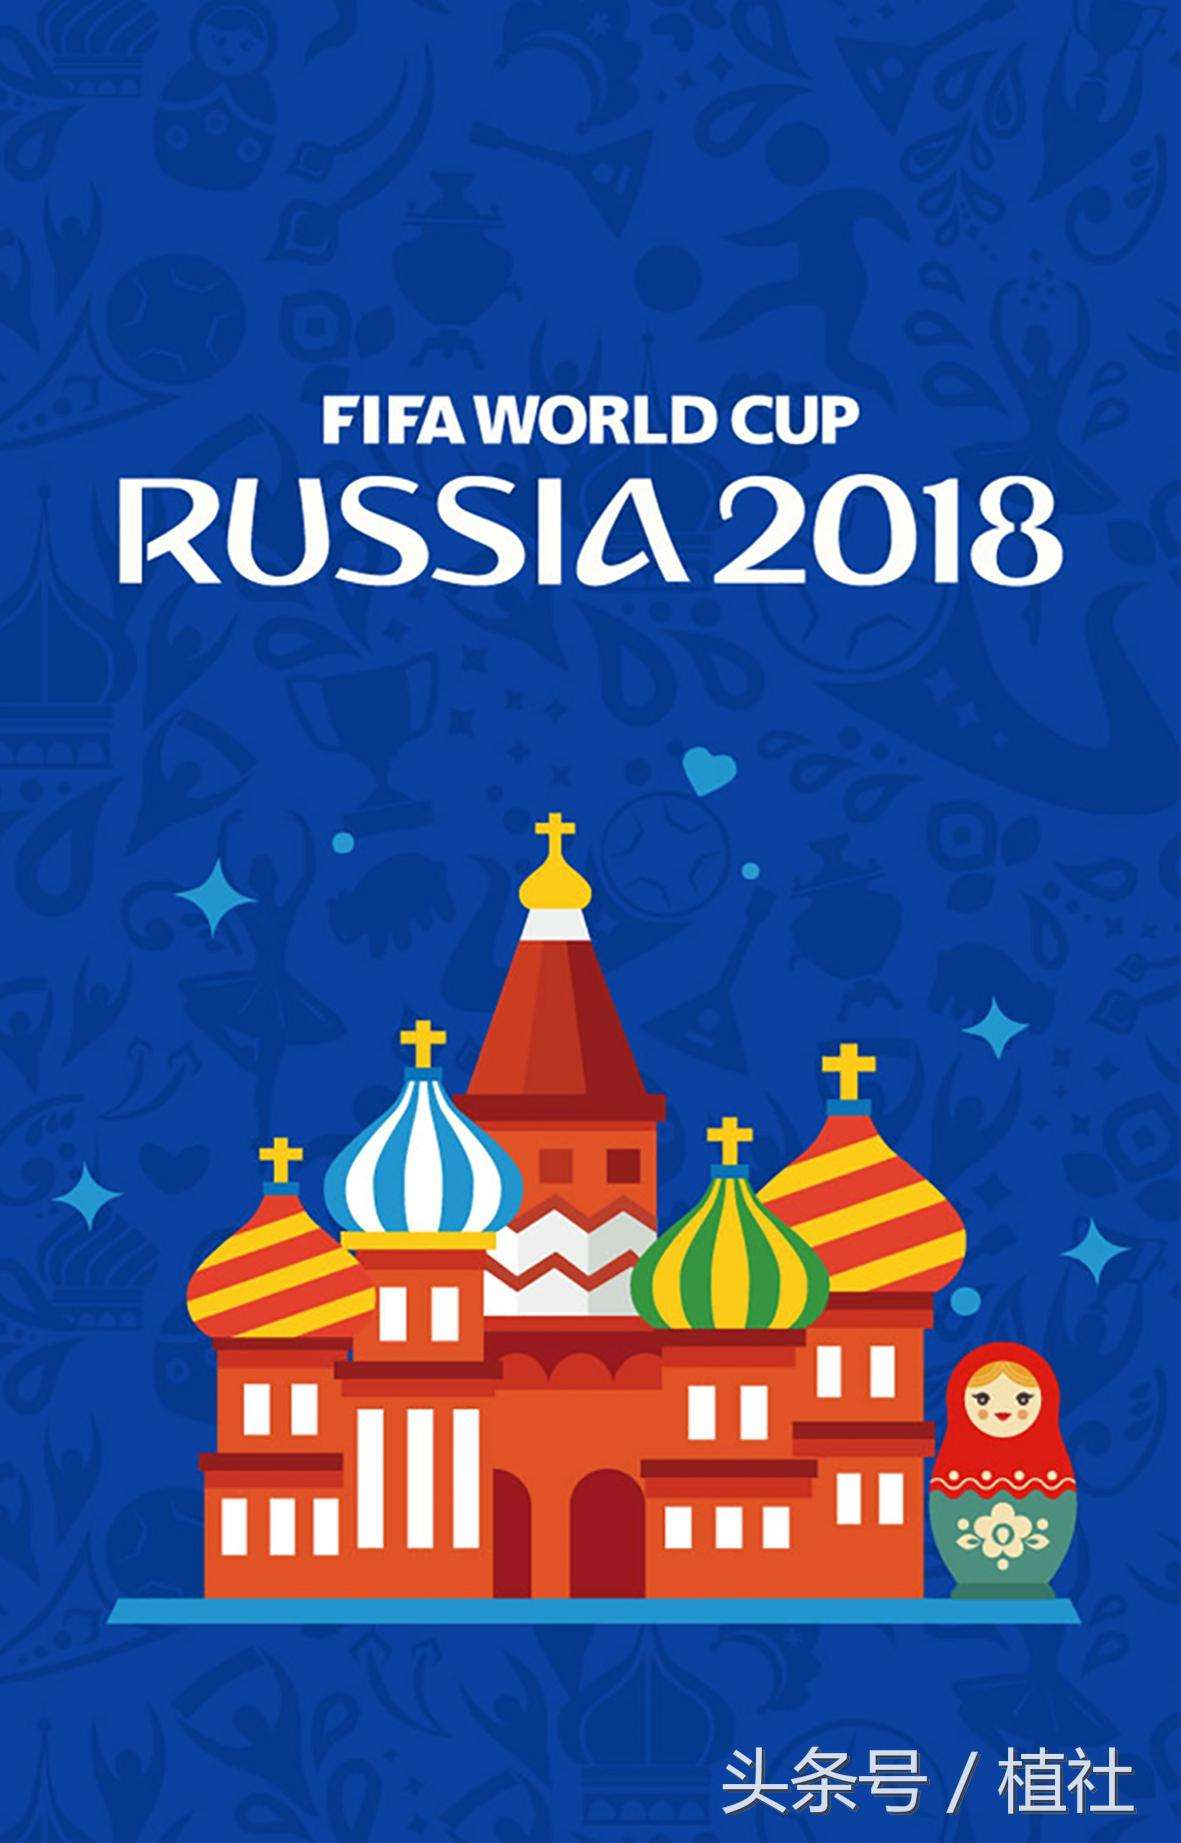 俄罗斯世界杯让全世界沸腾，我们先来认识一下俄罗斯的国花向日葵